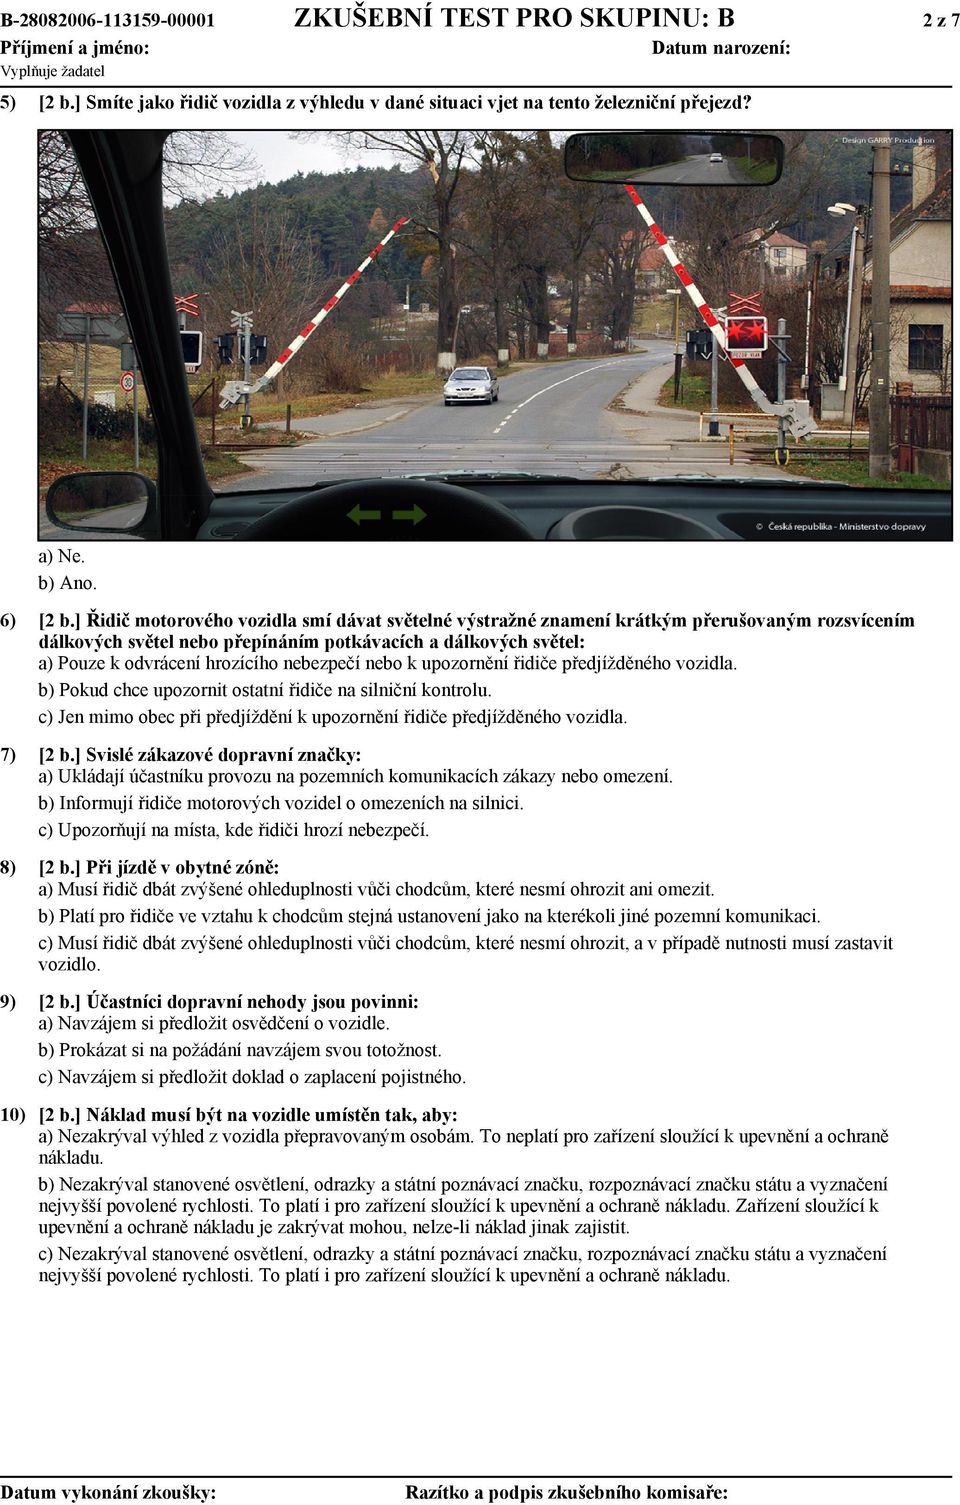 nebezpečí nebo k upozornění řidiče předjížděného vozidla. b) Pokud chce upozornit ostatní řidiče na silniční kontrolu. c) Jen mimo obec při předjíždění k upozornění řidiče předjížděného vozidla.